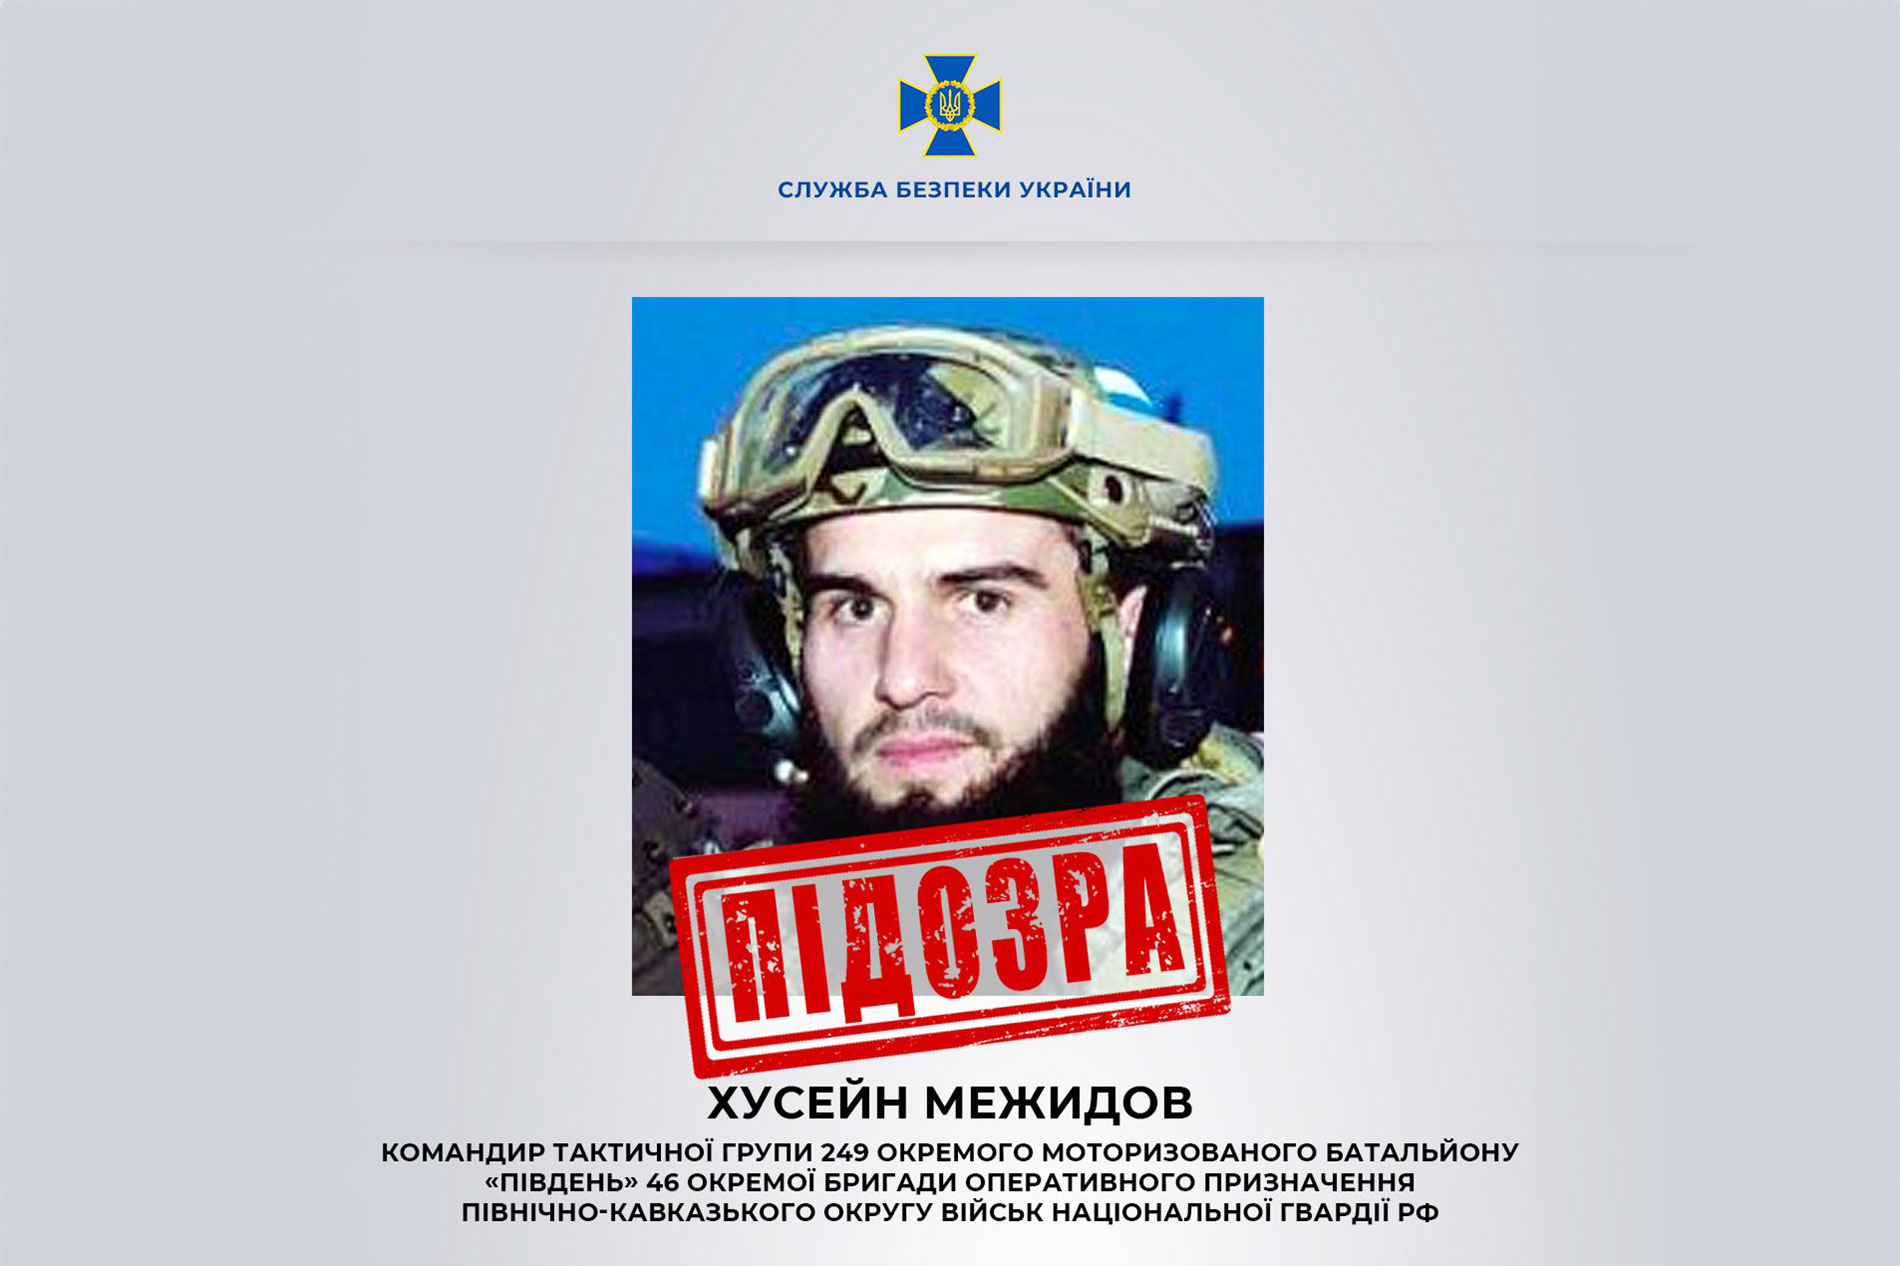 Russian military commander Huseyn Mezhidov. © SBU